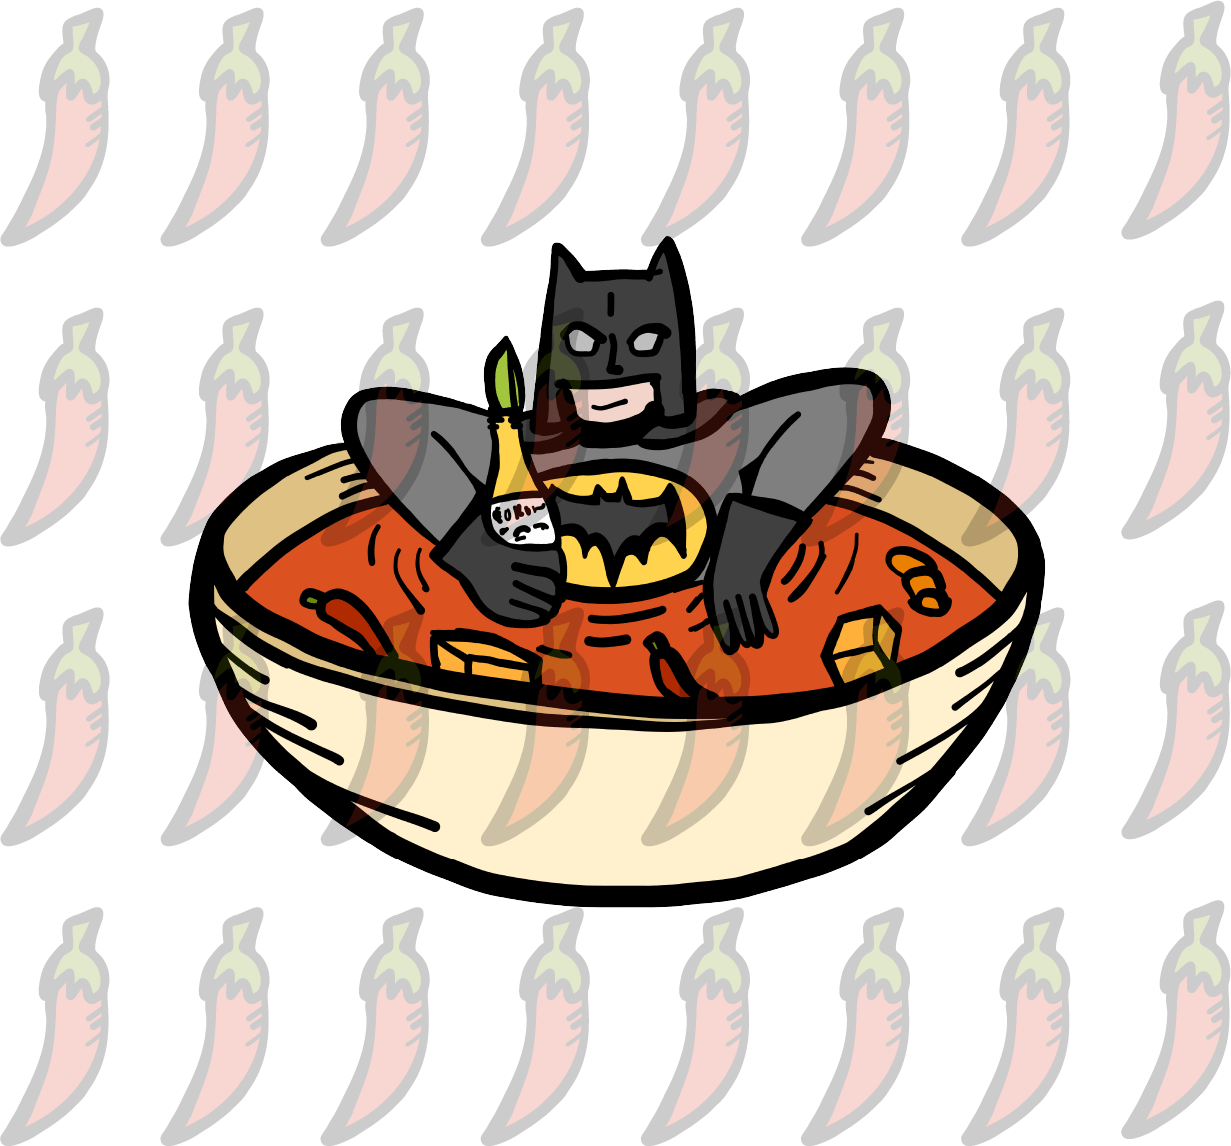 Bat Soup 🦇 - Men's T Shirt